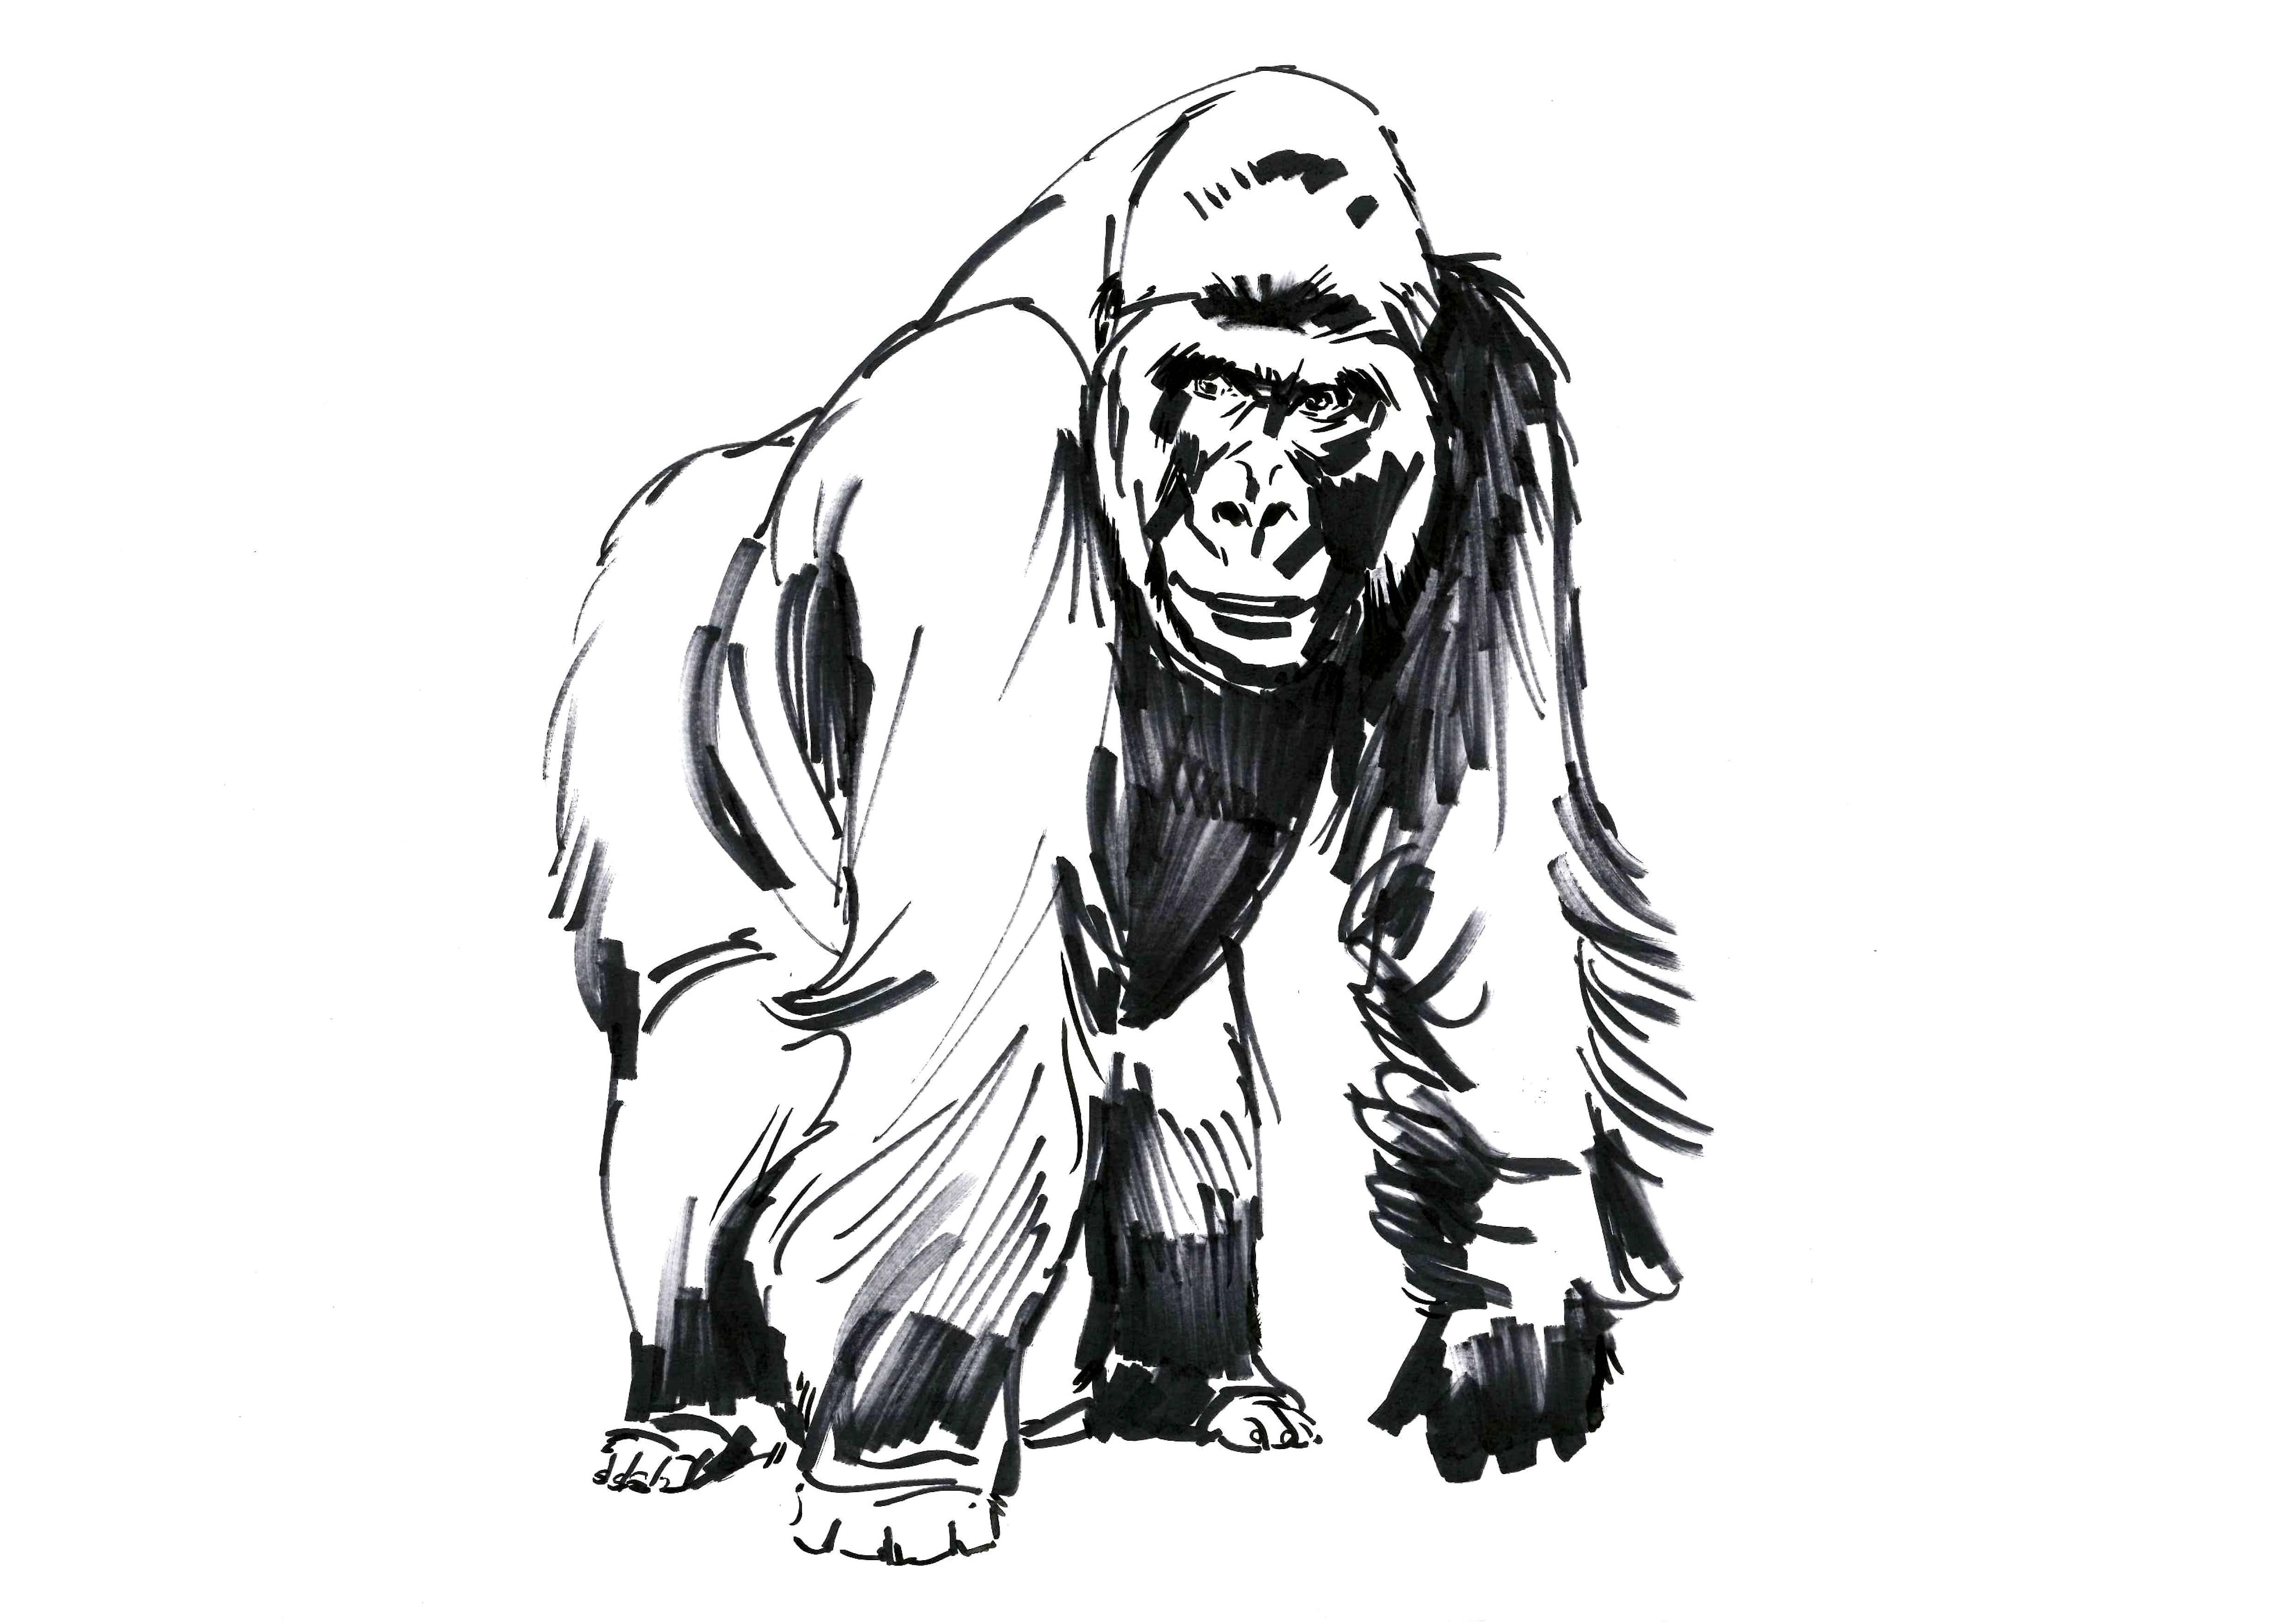 Как нарисовать гориллу